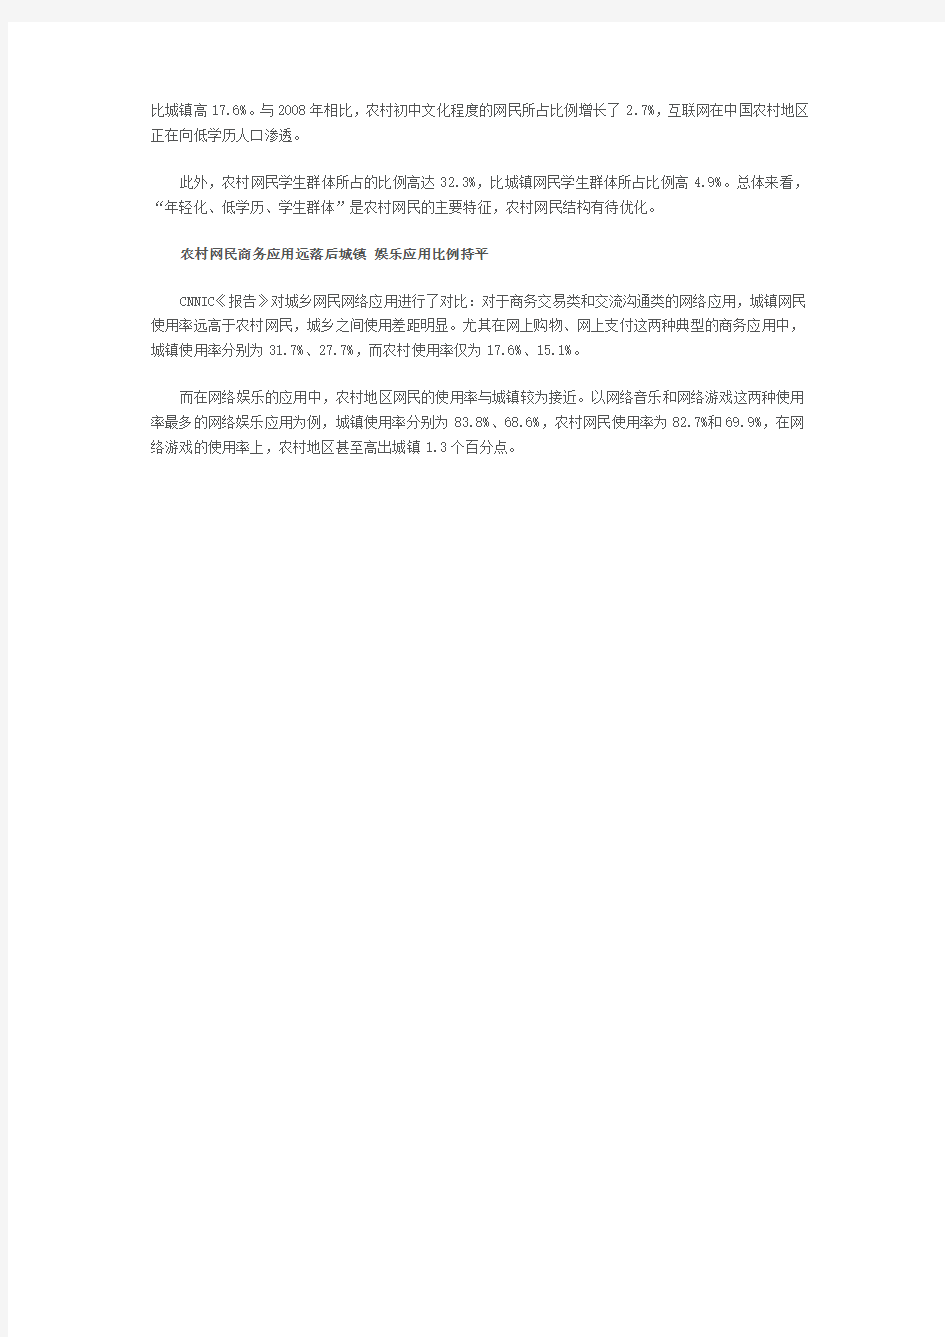 2009年中国农村互联网发展状况调查报告